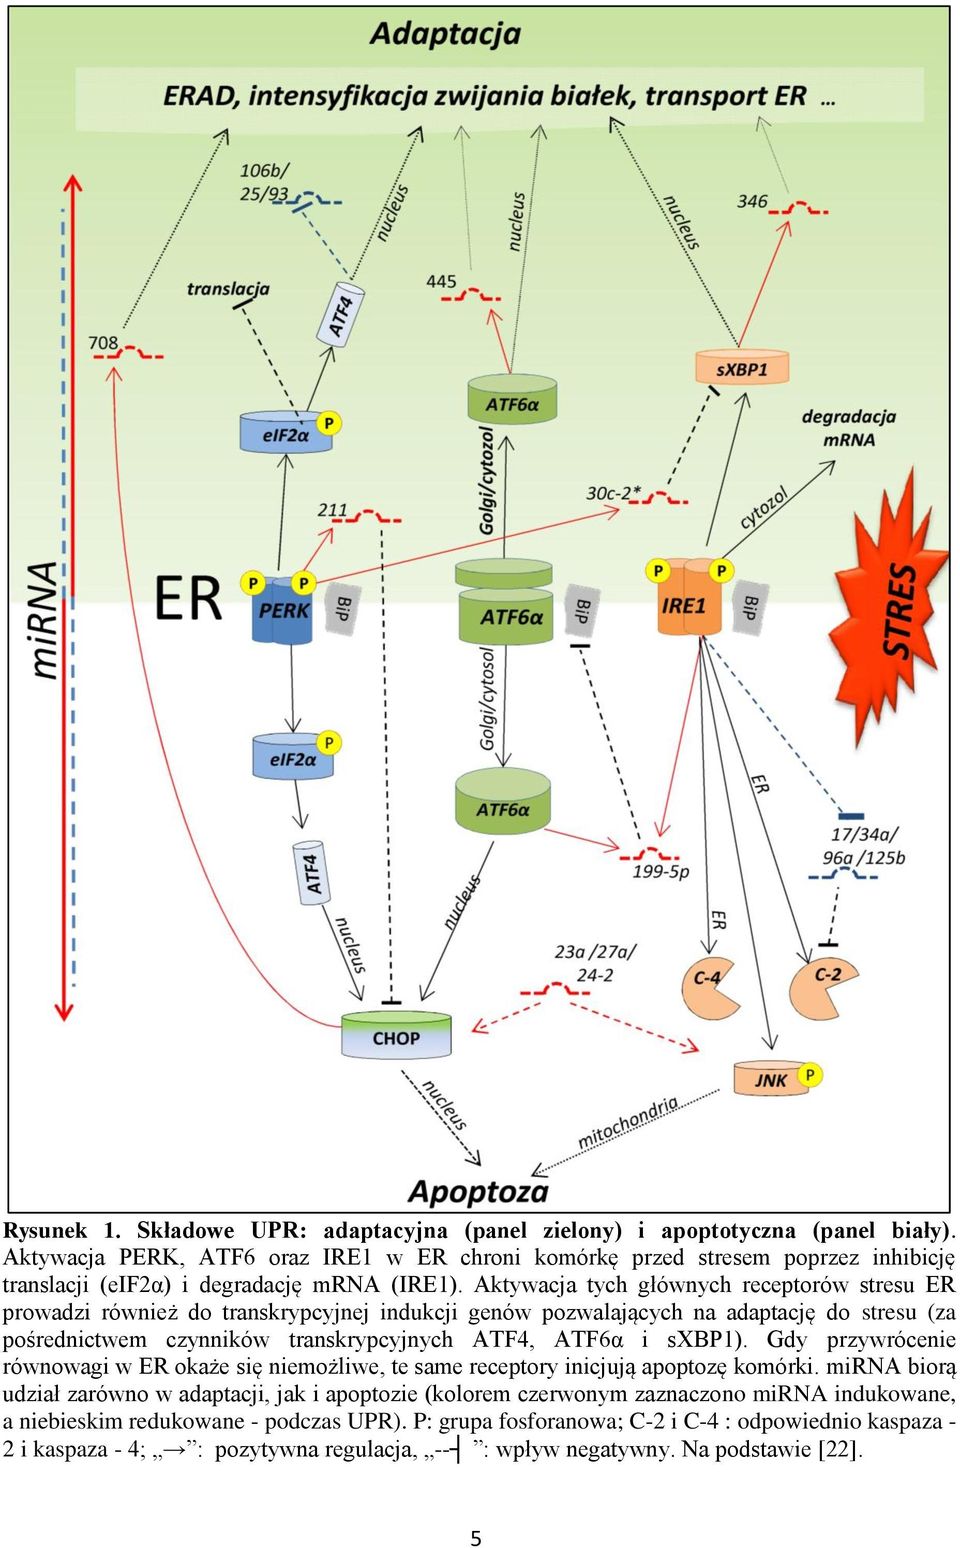 Aktywacja tych głównych receptorów stresu ER prowadzi również do transkrypcyjnej indukcji genów pozwalających na adaptację do stresu (za pośrednictwem czynników transkrypcyjnych ATF4, ATF6α i